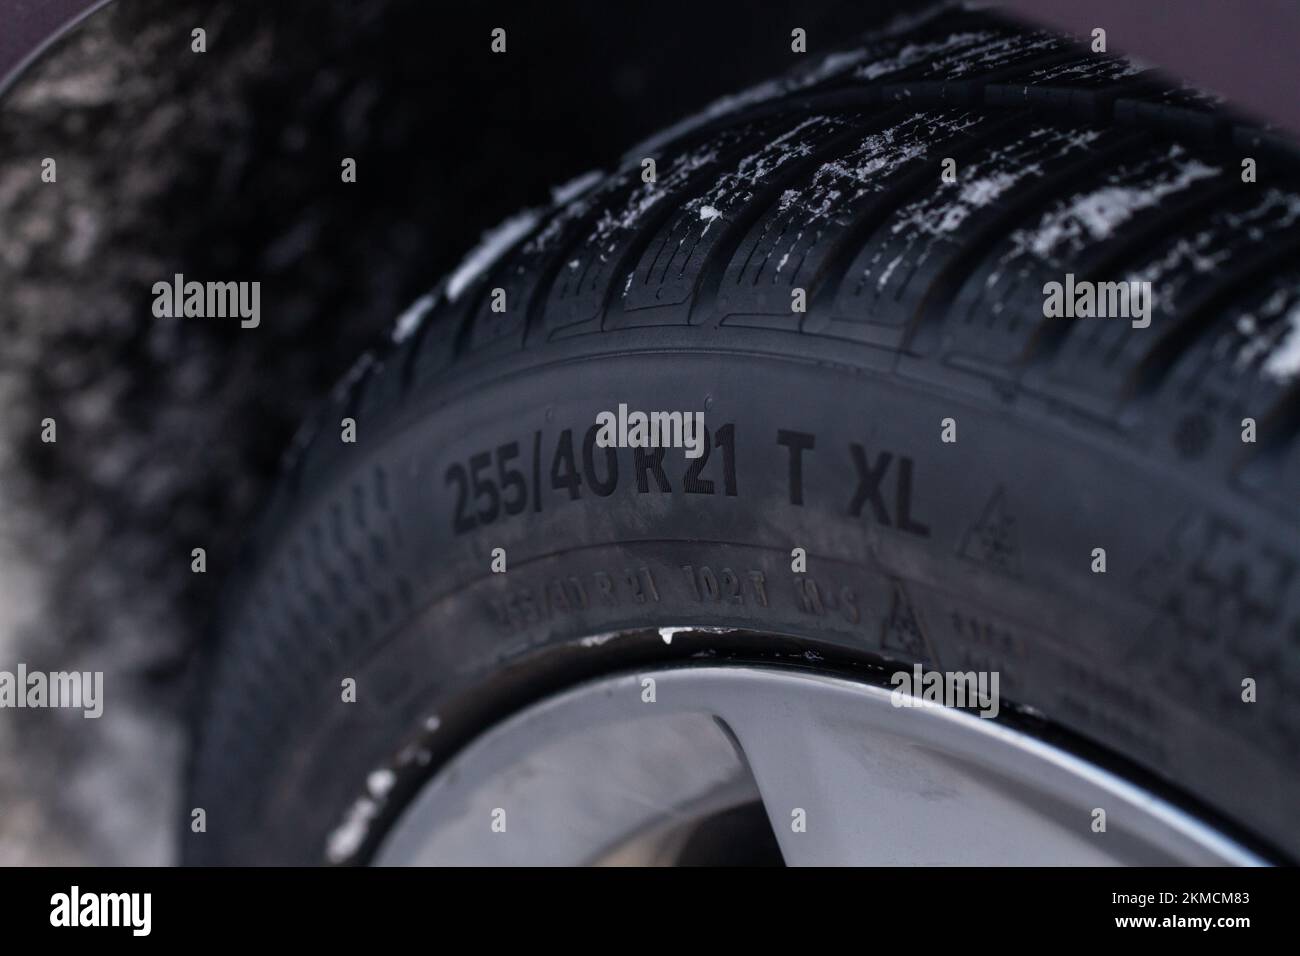 Code de pneu Banque de photographies et d'images à haute résolution - Alamy